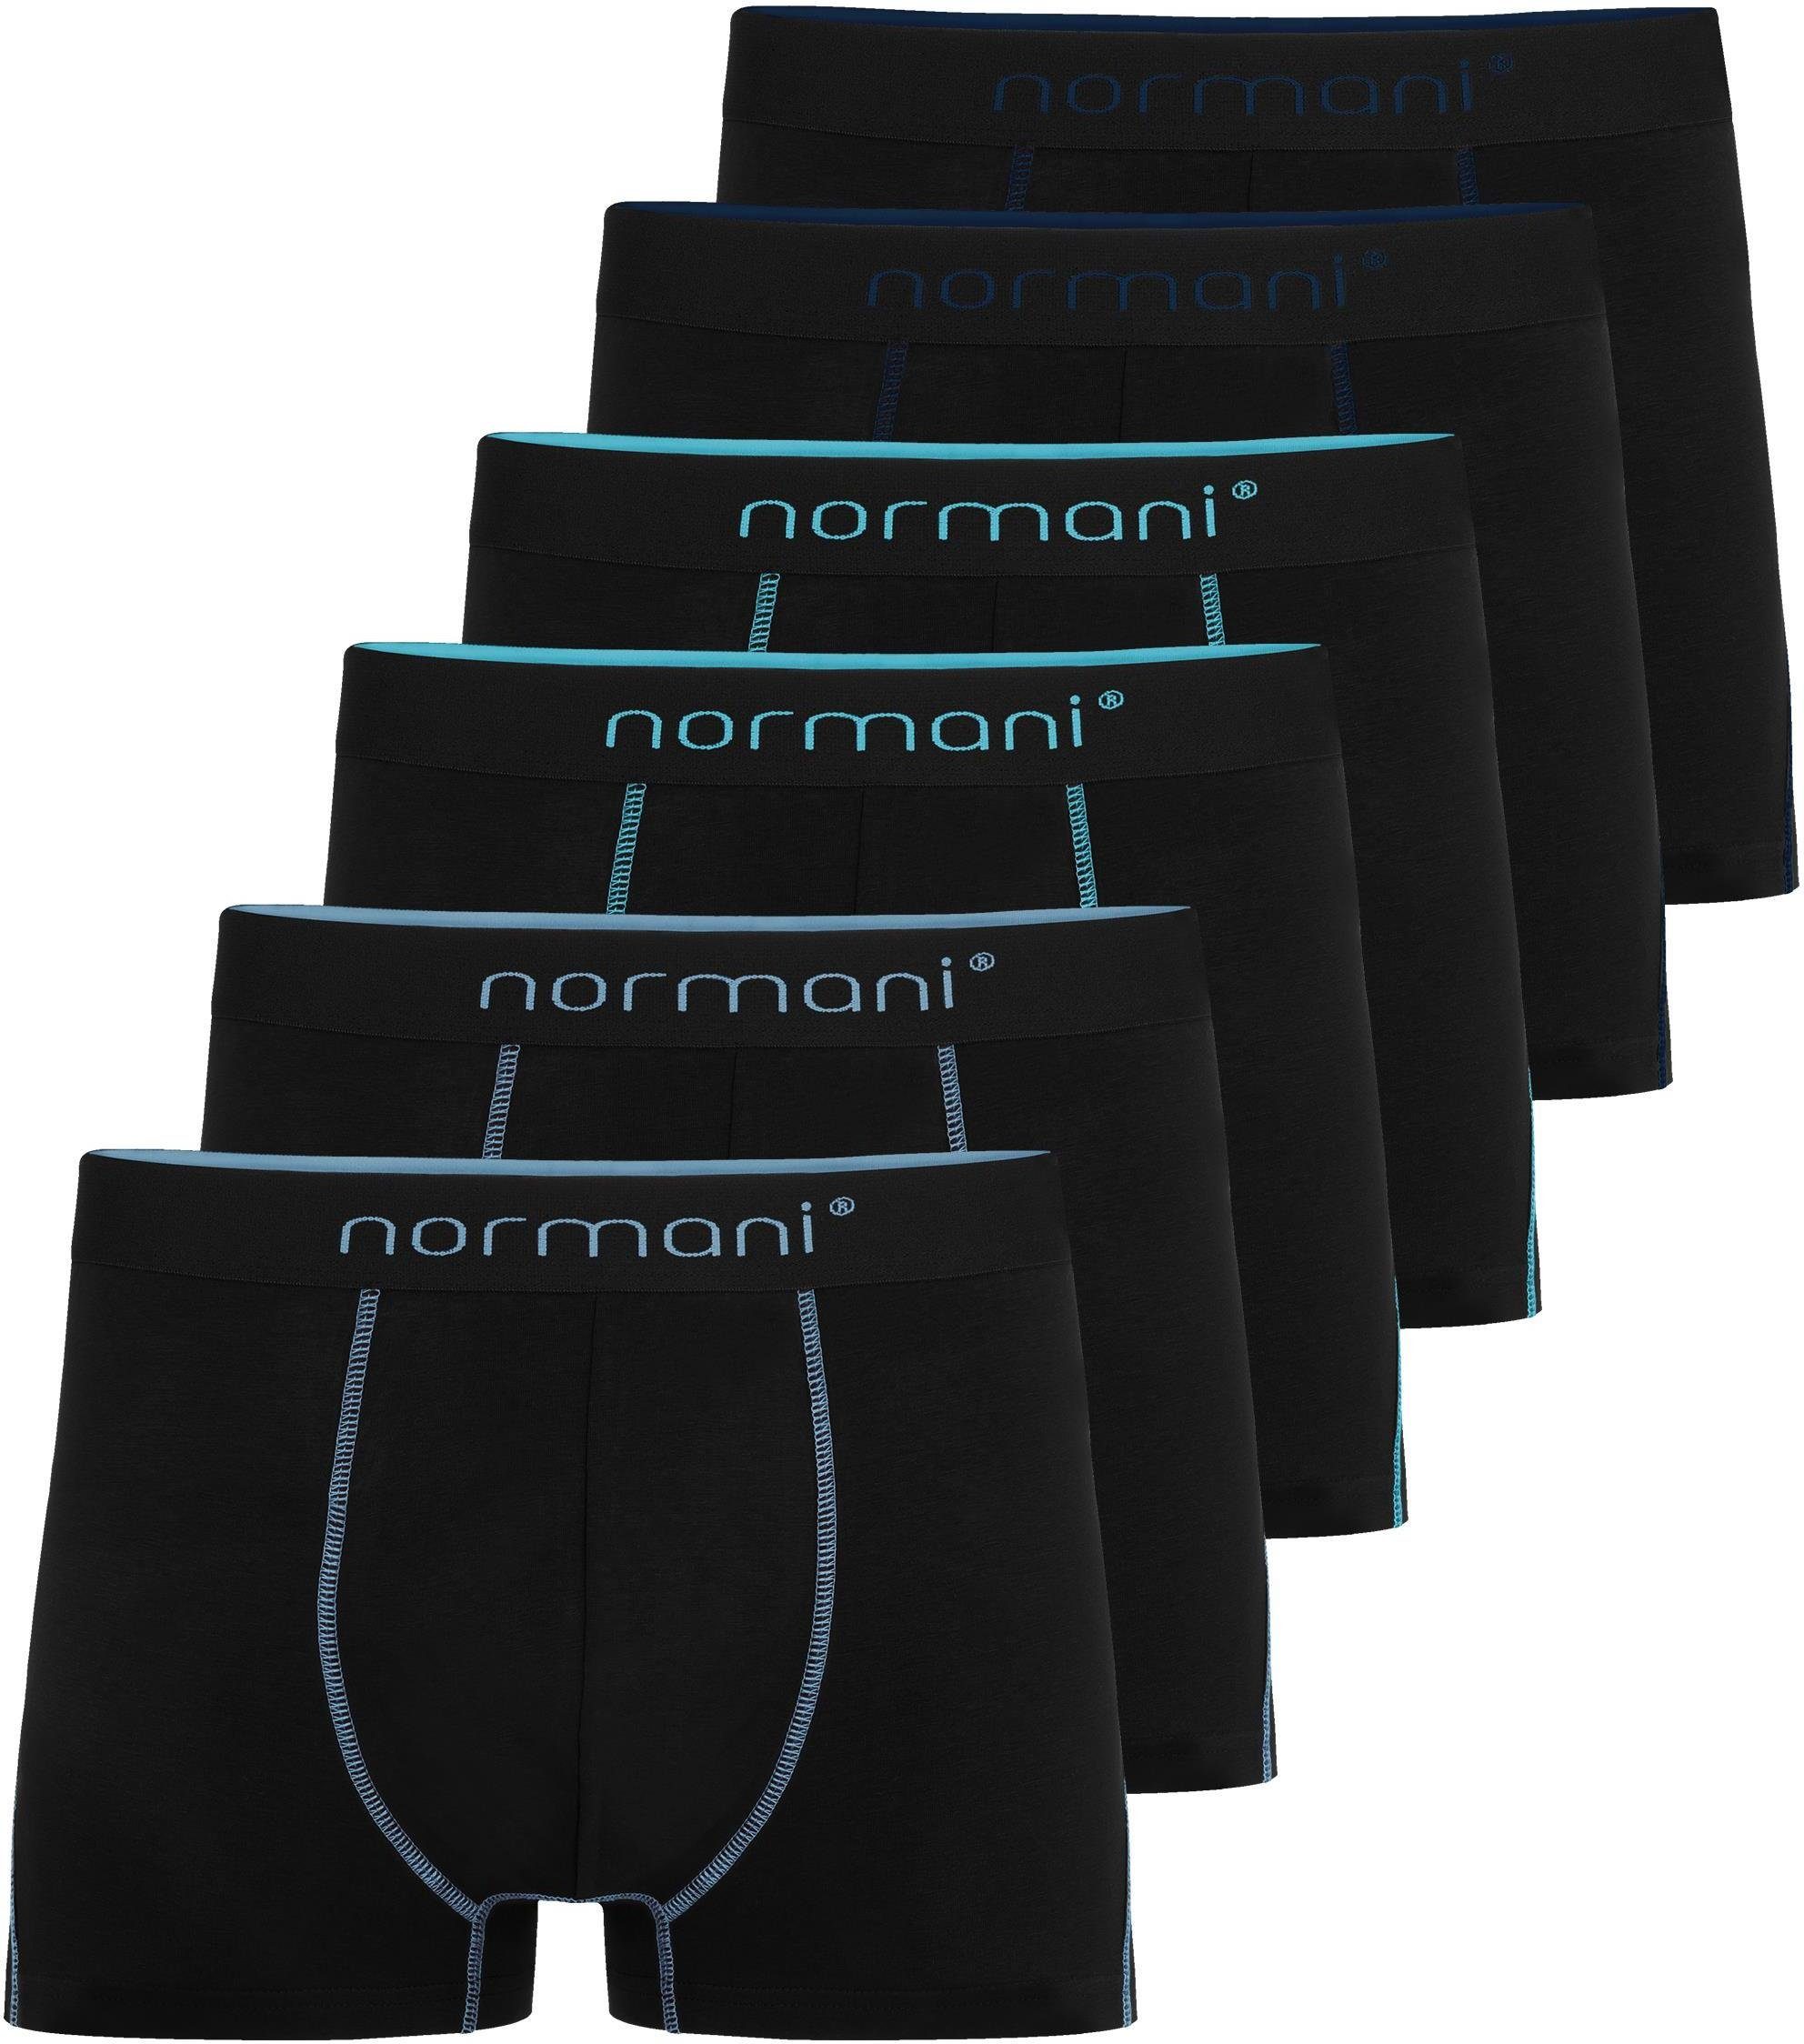 6 aus Baumwoll-Boxershorts Baumwolle Boxershorts für normani Männer atmungsaktiver Dunkelblau/Hellblau/Türkis Unterhose Herren